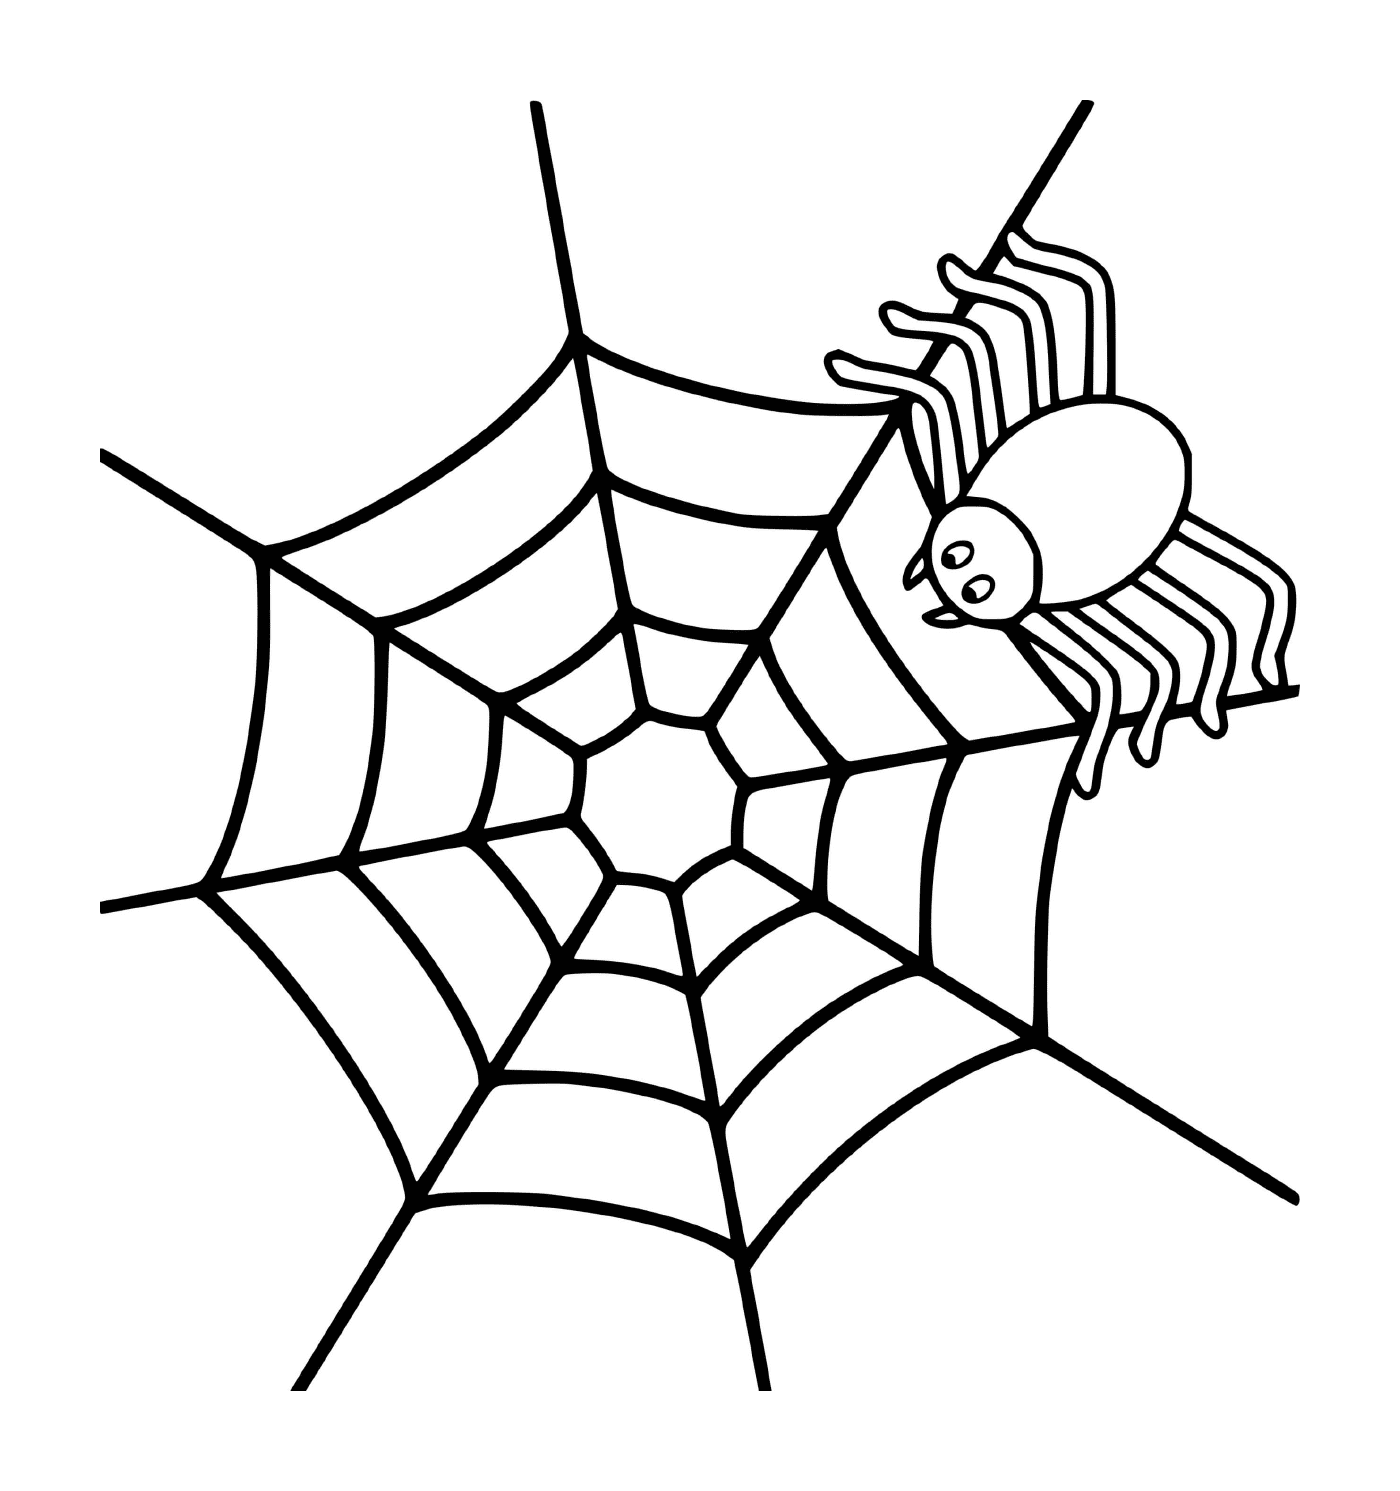  Una araña simple en una telaraña 